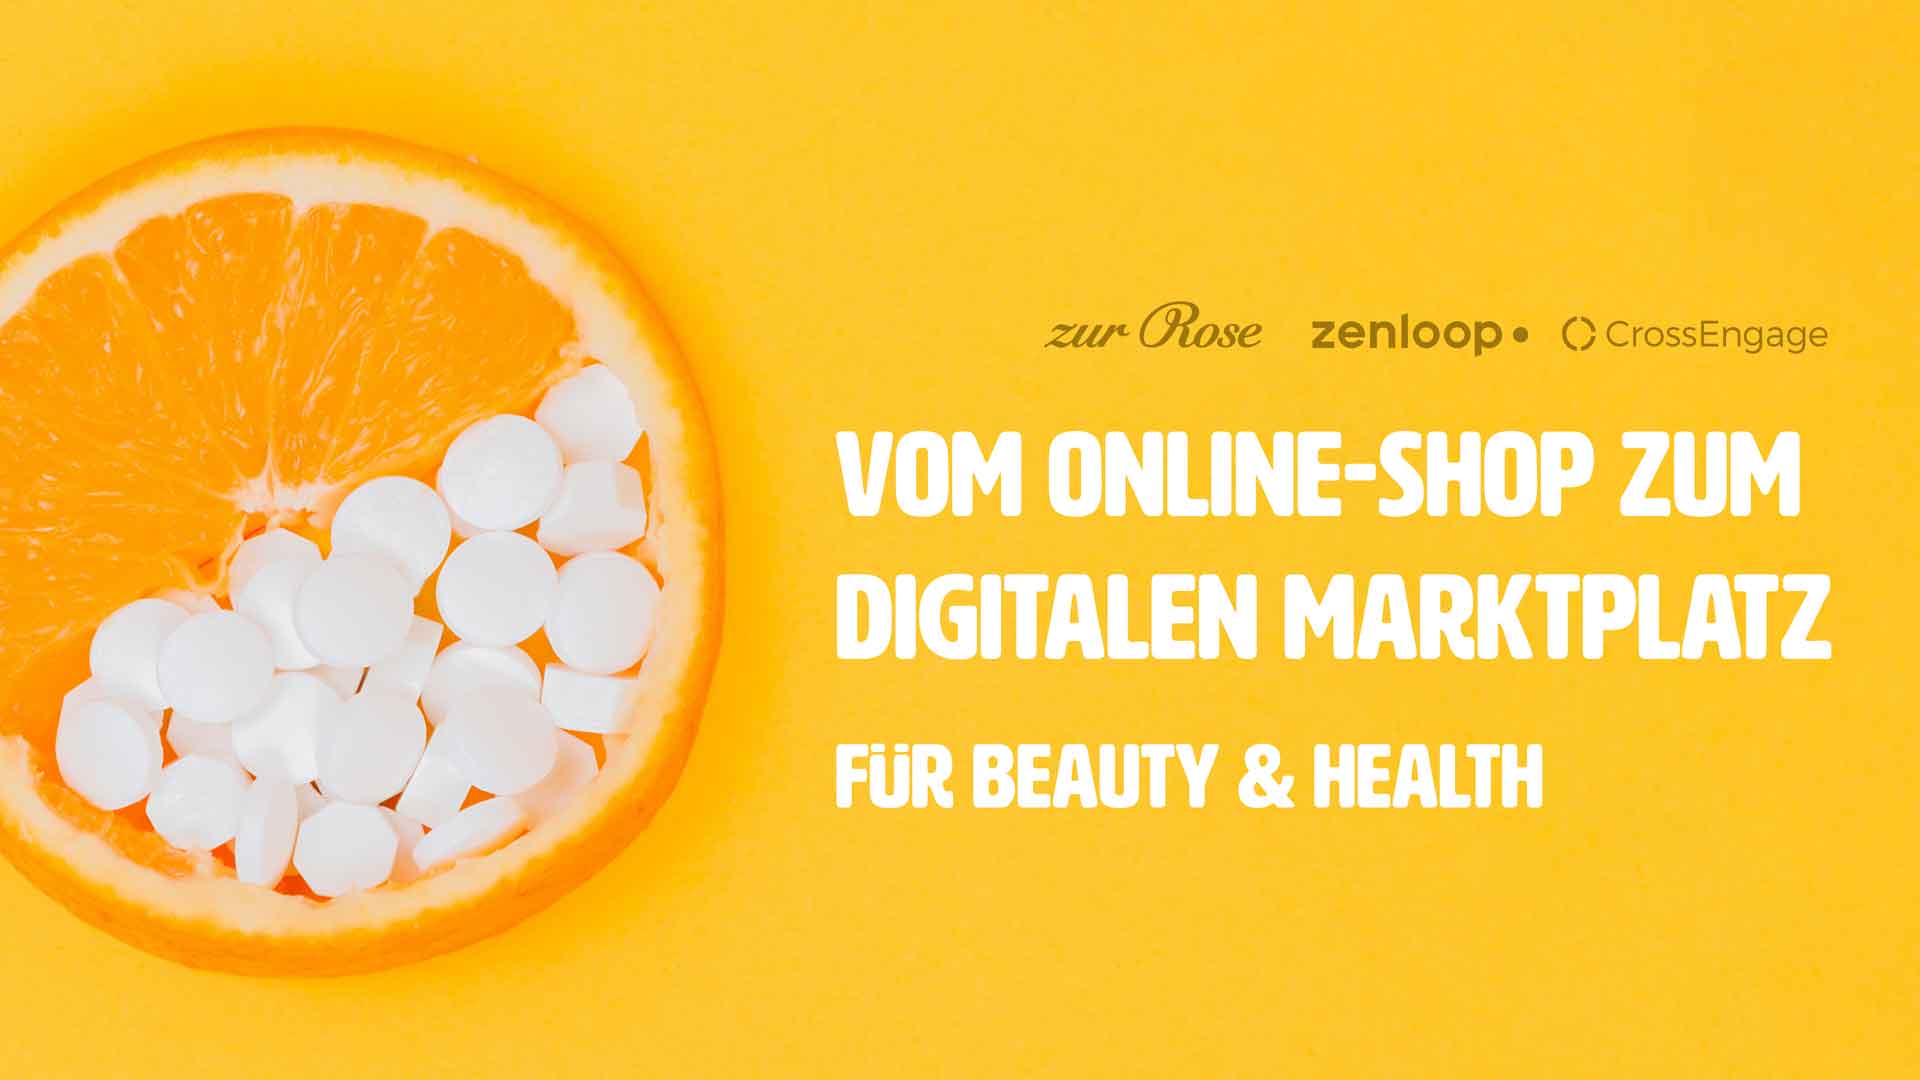 Webinar Zur Rose Zenloop CrossEngage: Vom Online-Shop zum digitalen Marktplatz für Beatuy & Health